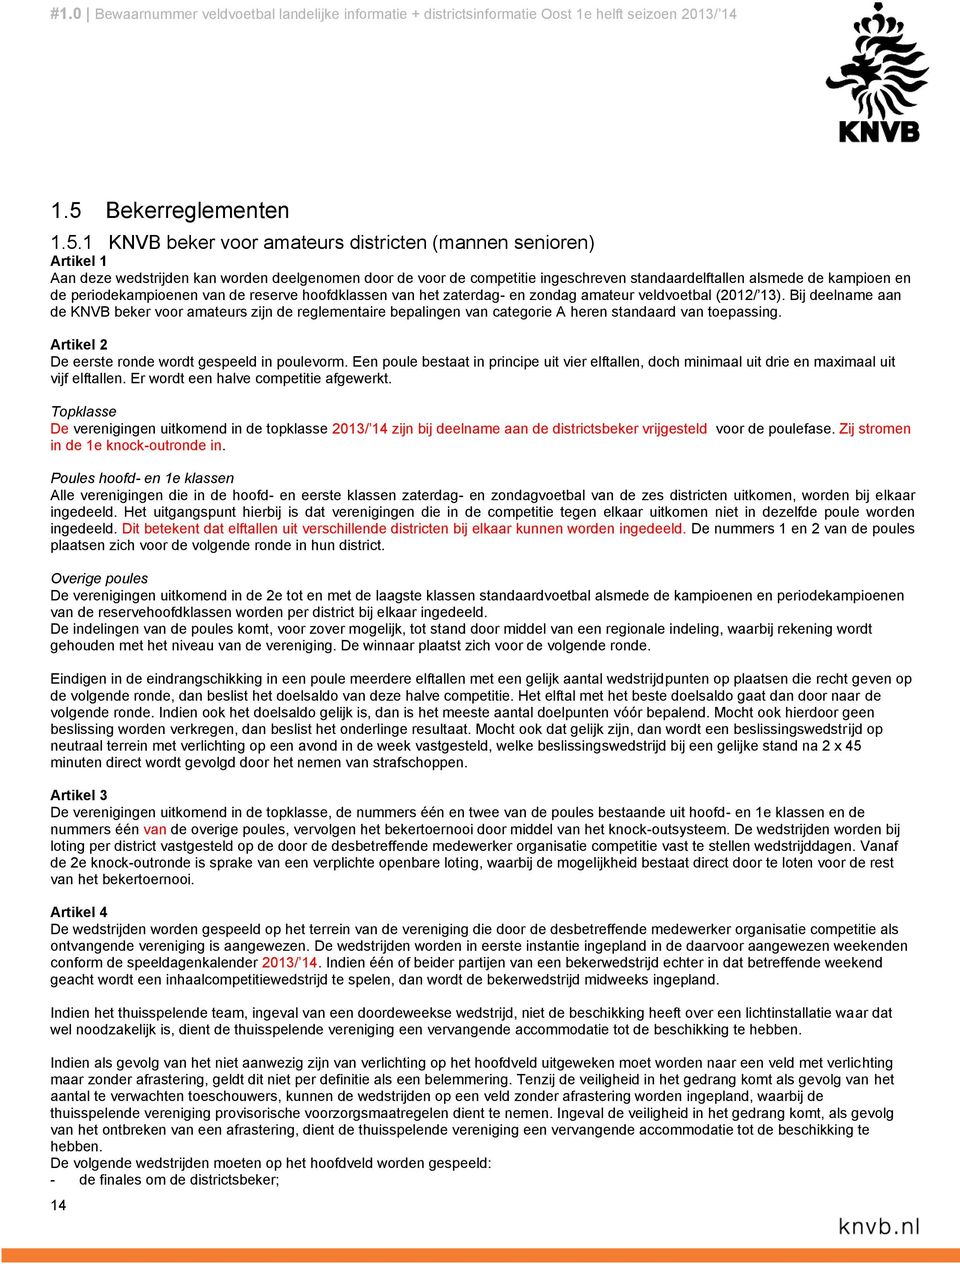 Bij deelname aan de KNVB beker voor amateurs zijn de reglementaire bepalingen van categorie A heren standaard van toepassing. Artikel 2 De eerste ronde wordt gespeeld in poulevorm.